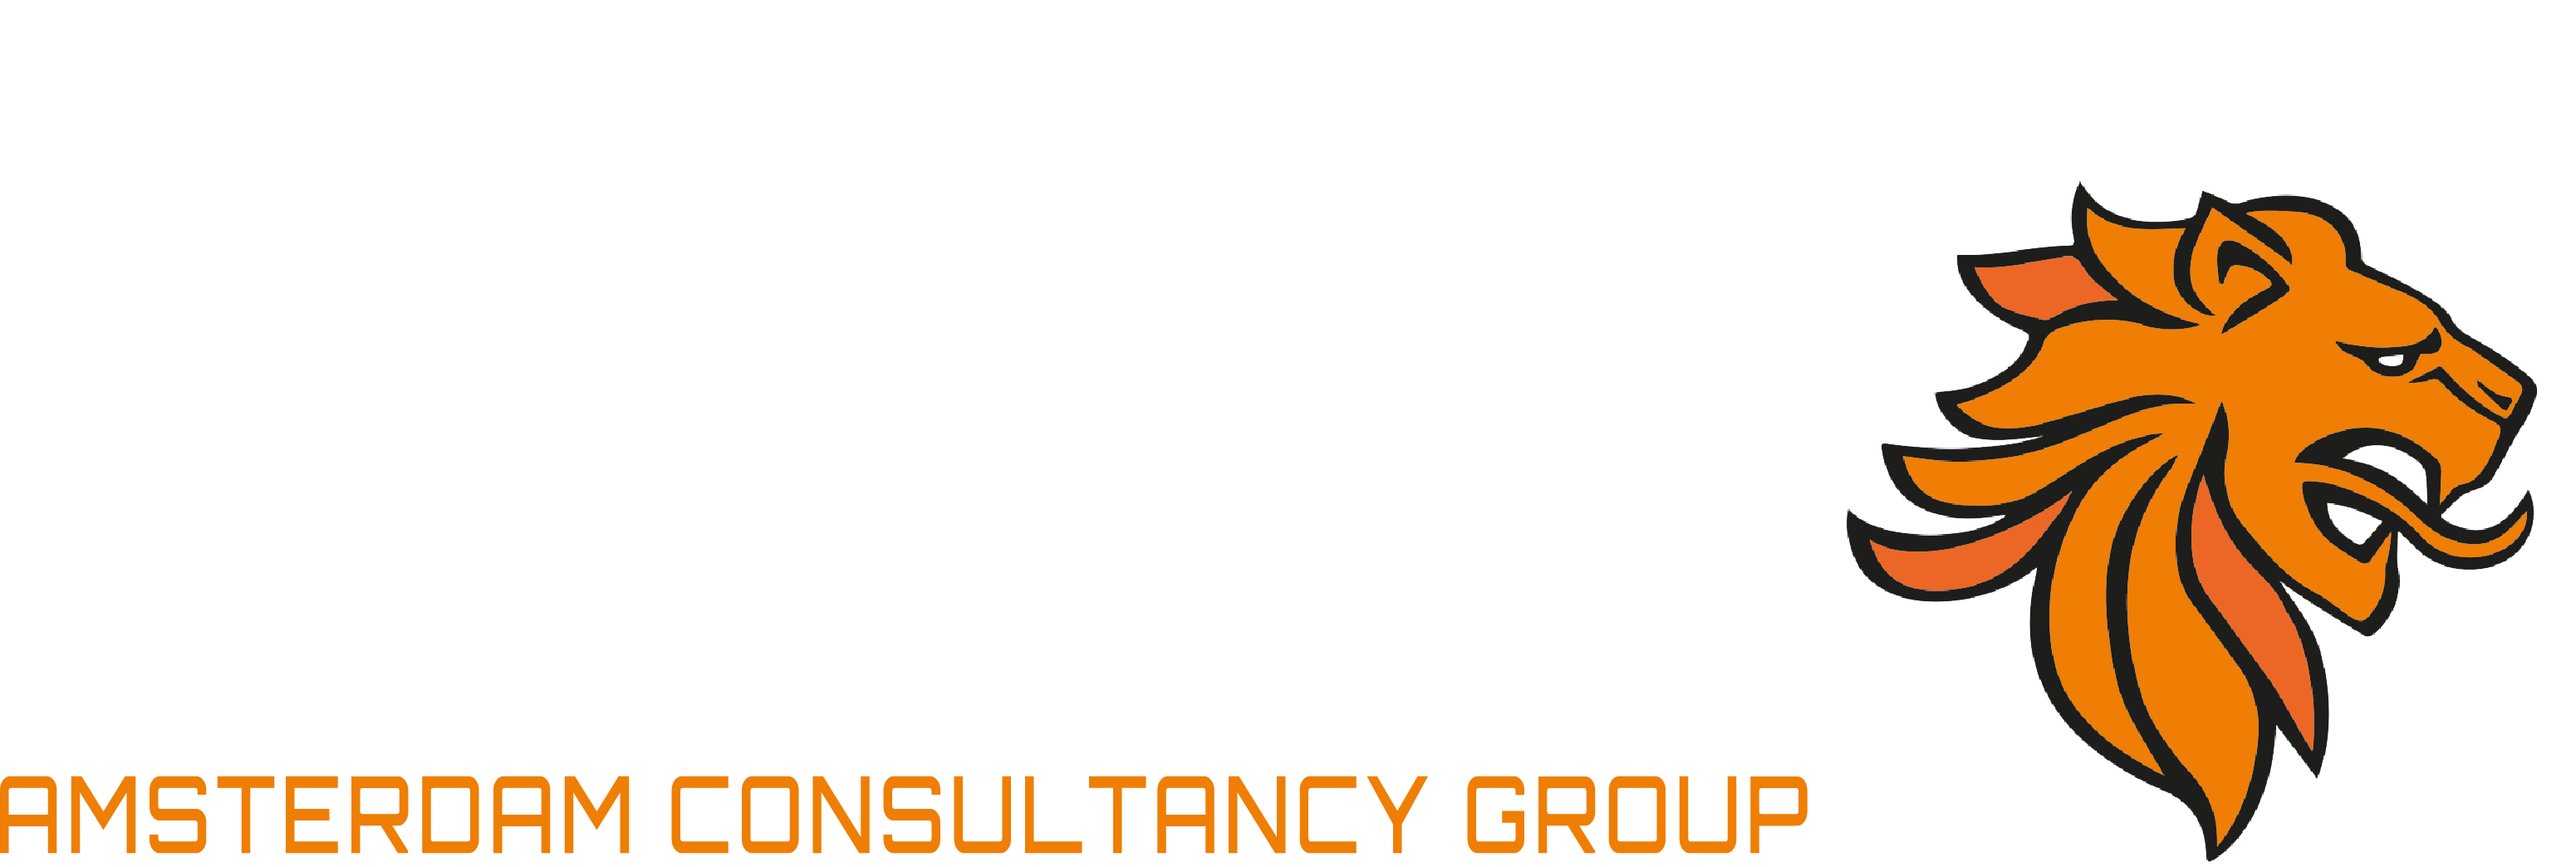 acg_logo_wit